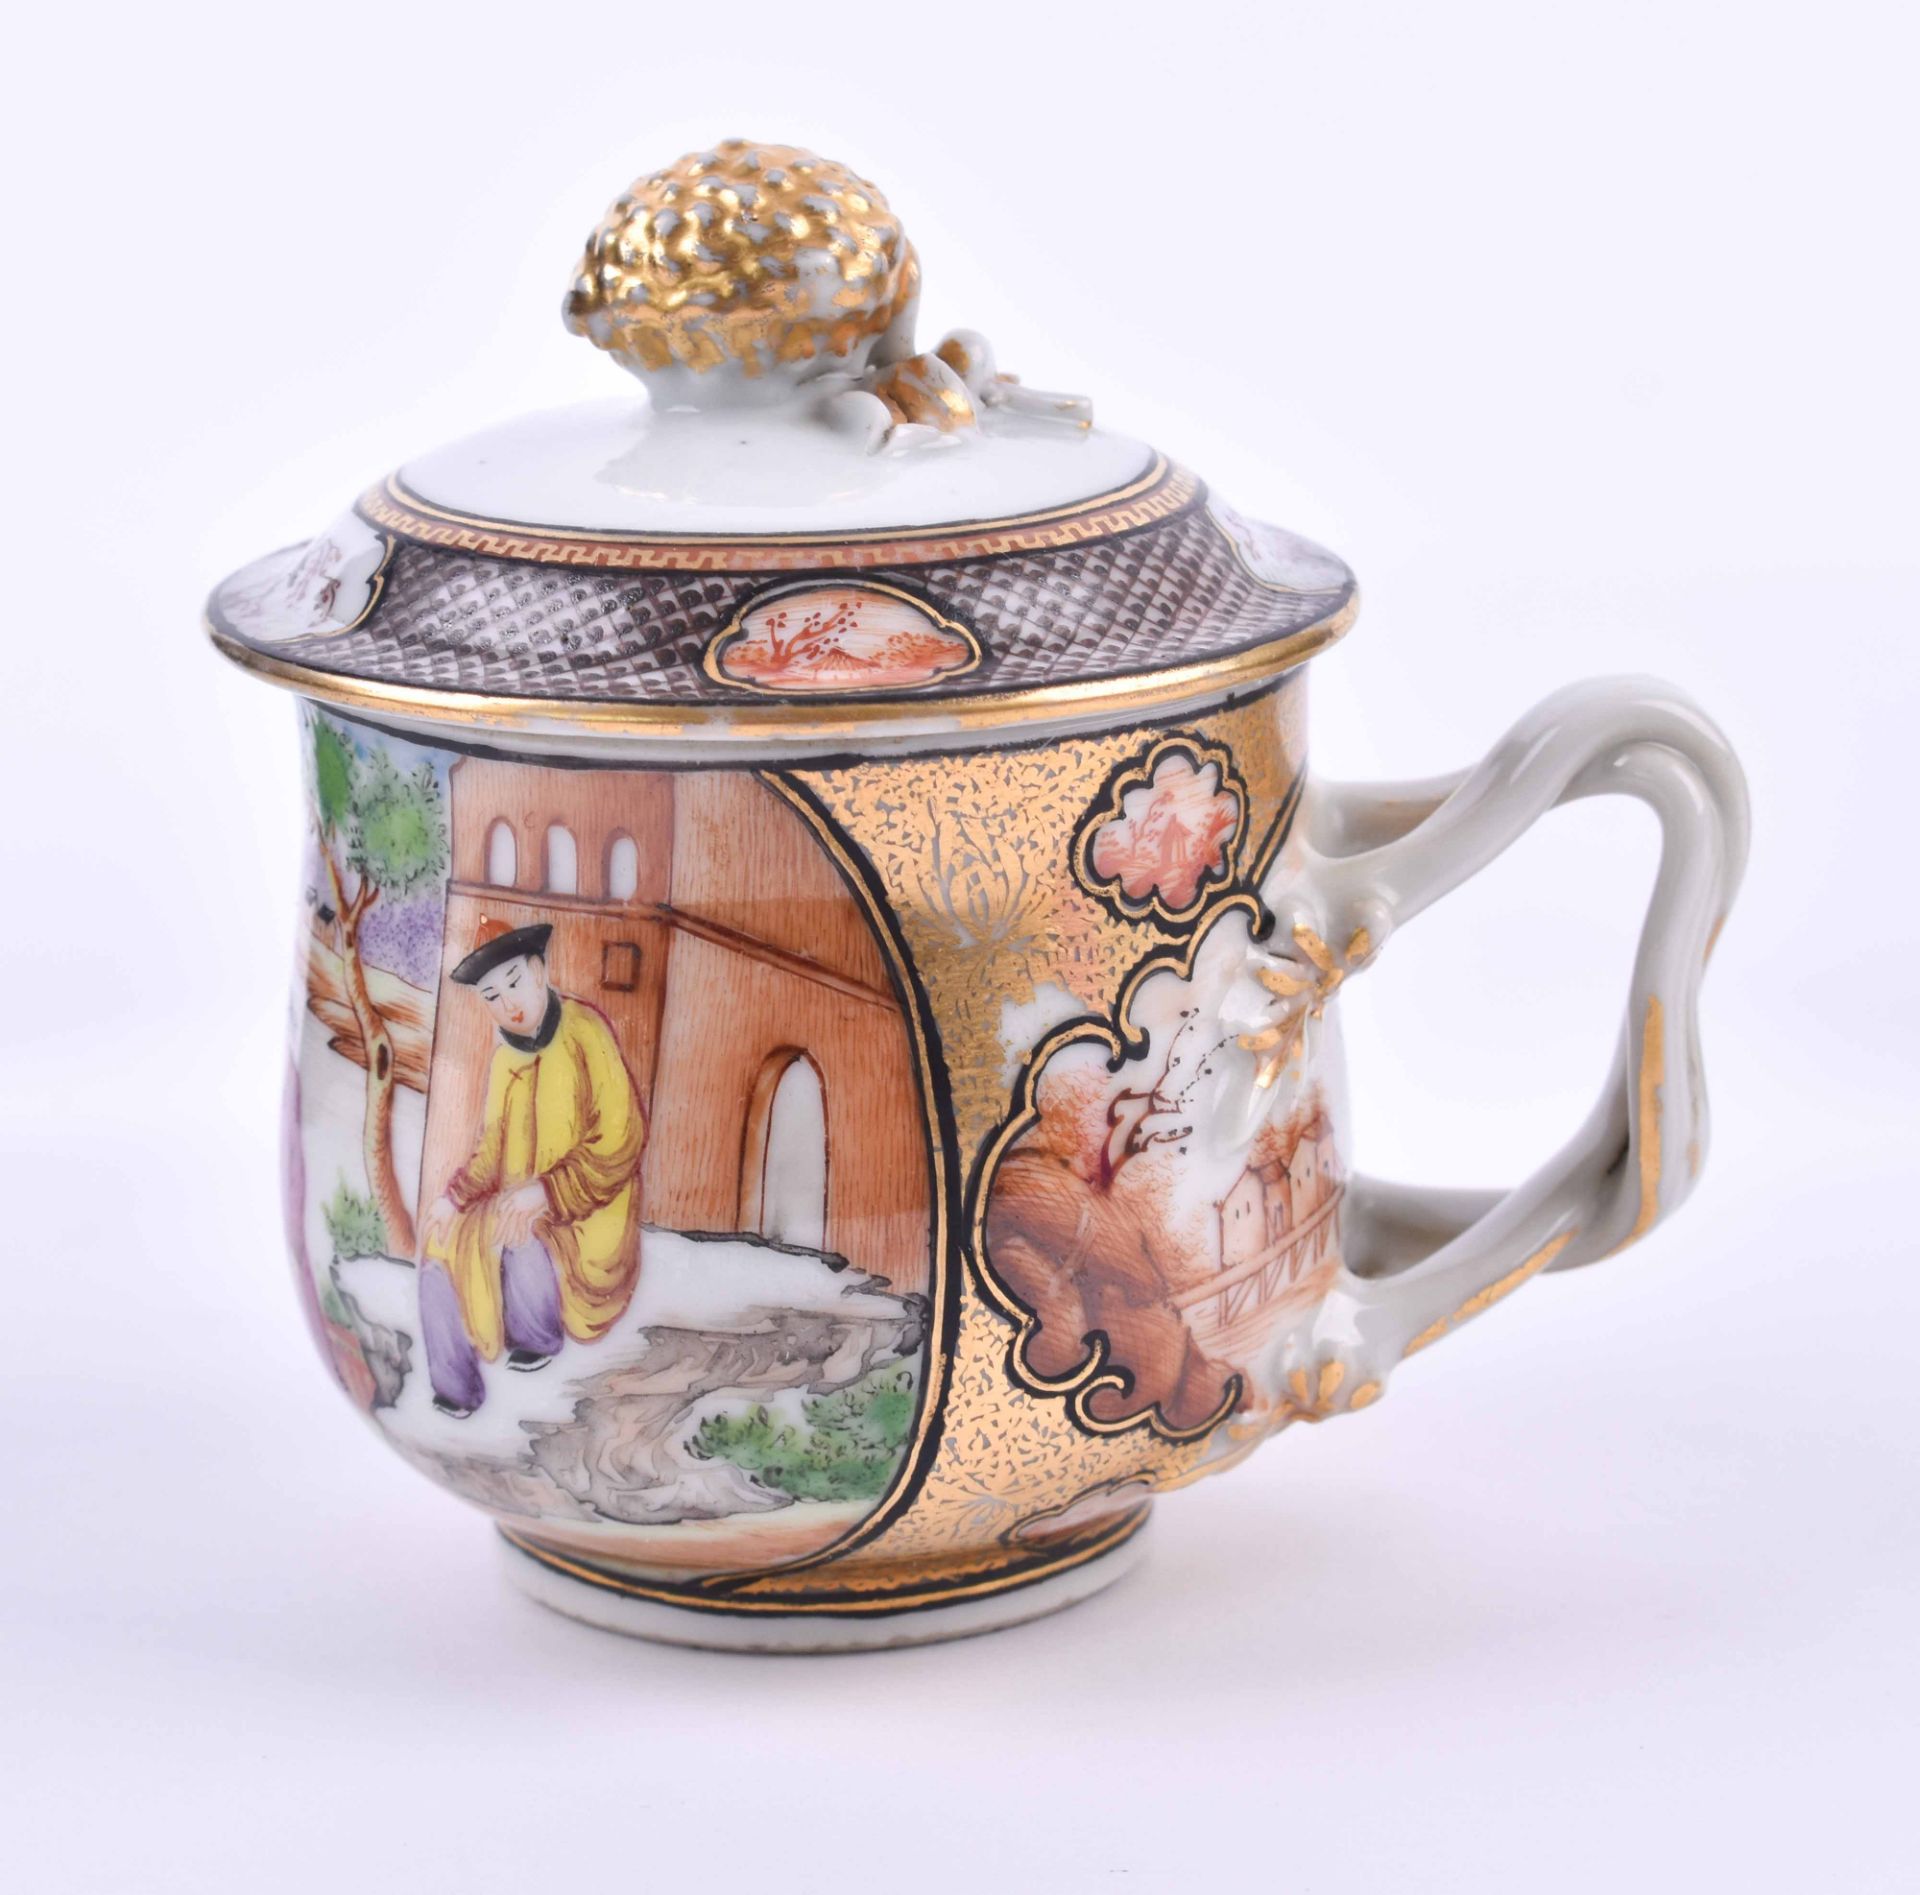 Teetasse mit Deckel China 18. Jhd.farbig bemalt und reich goldstaffiert, Deckelbekrönung in Form